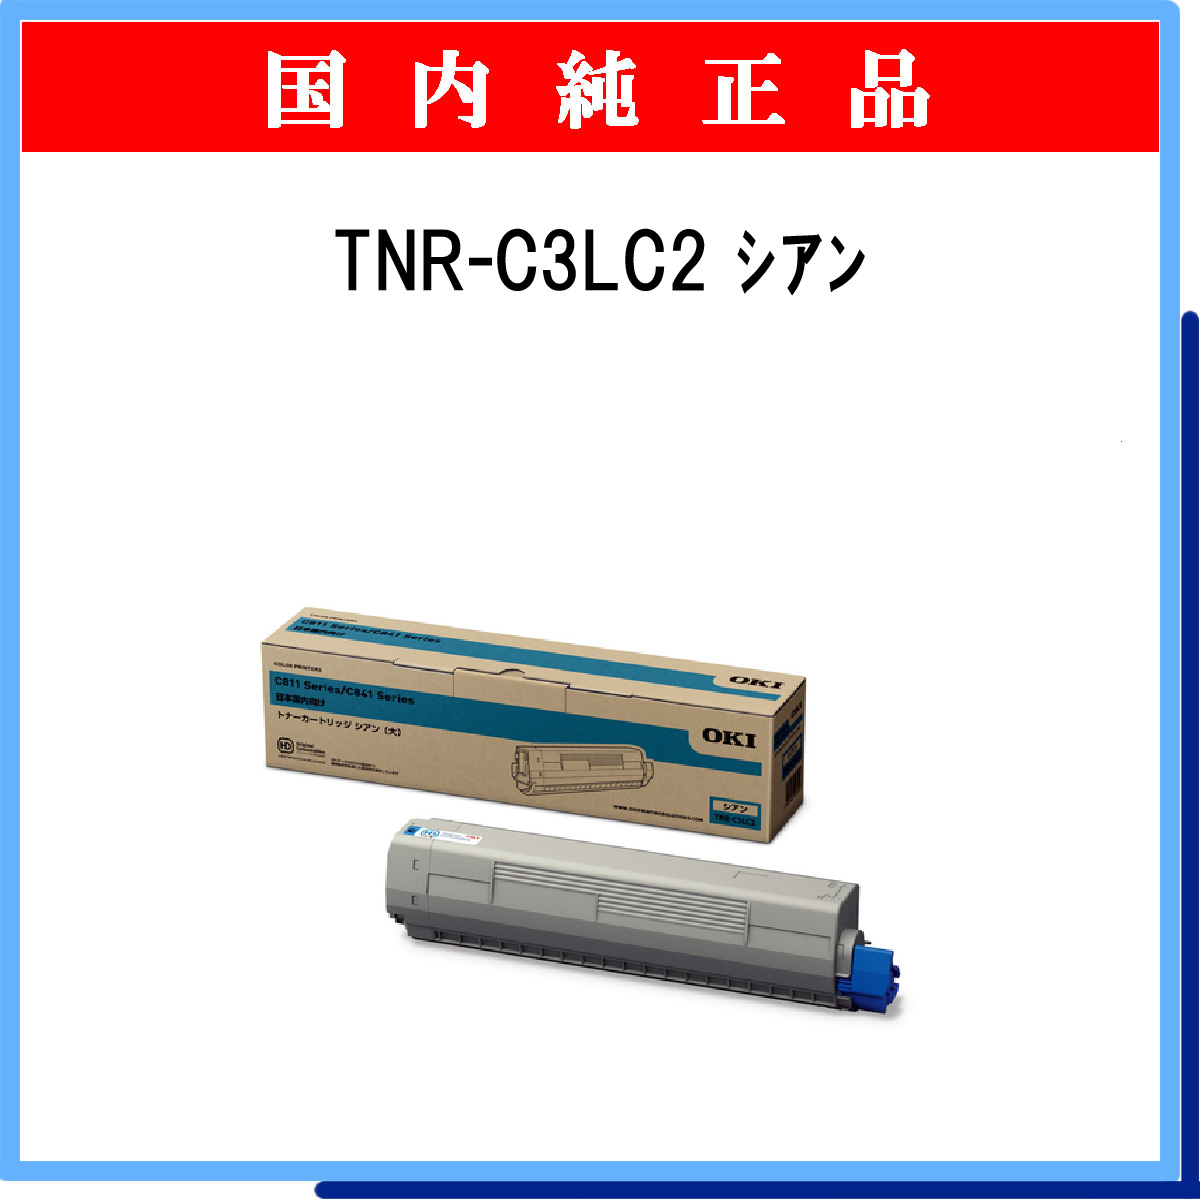 TNR-C3LC2 純正